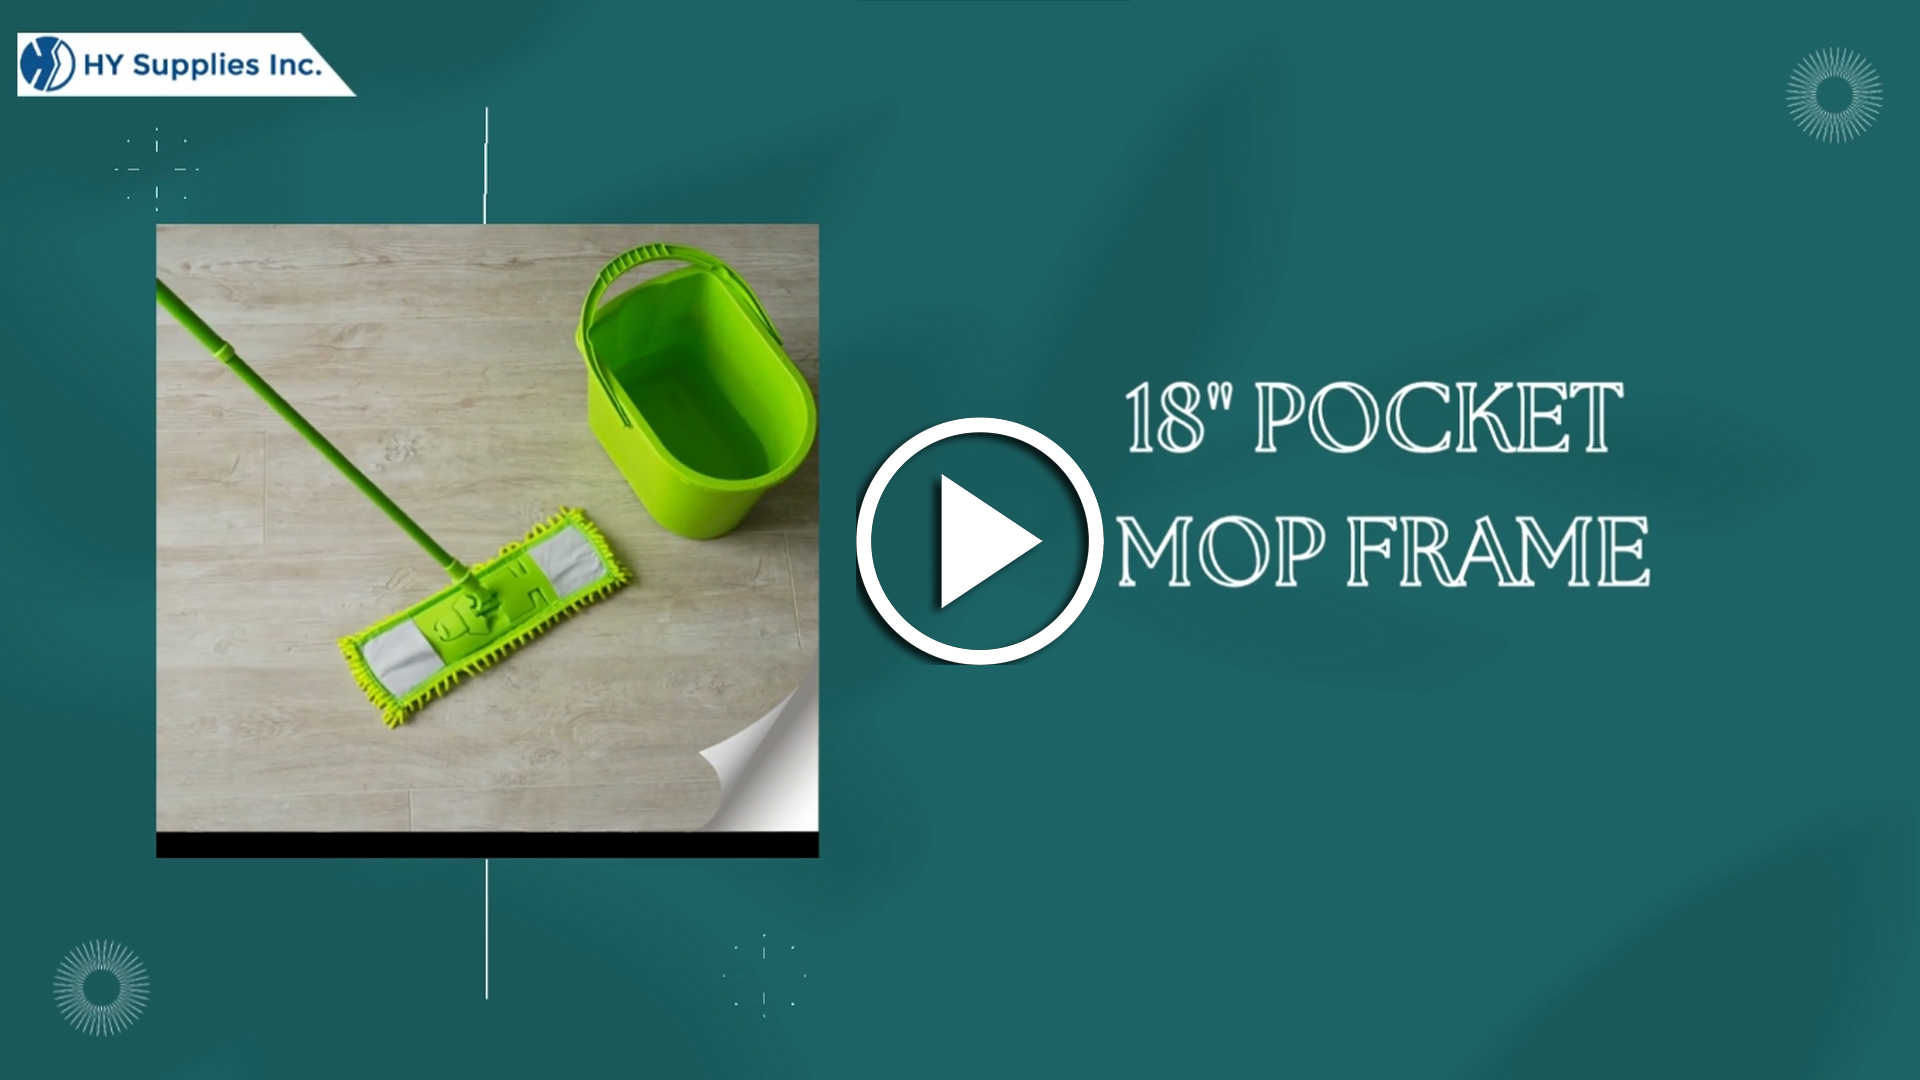 18"" Pocket Mop Frame